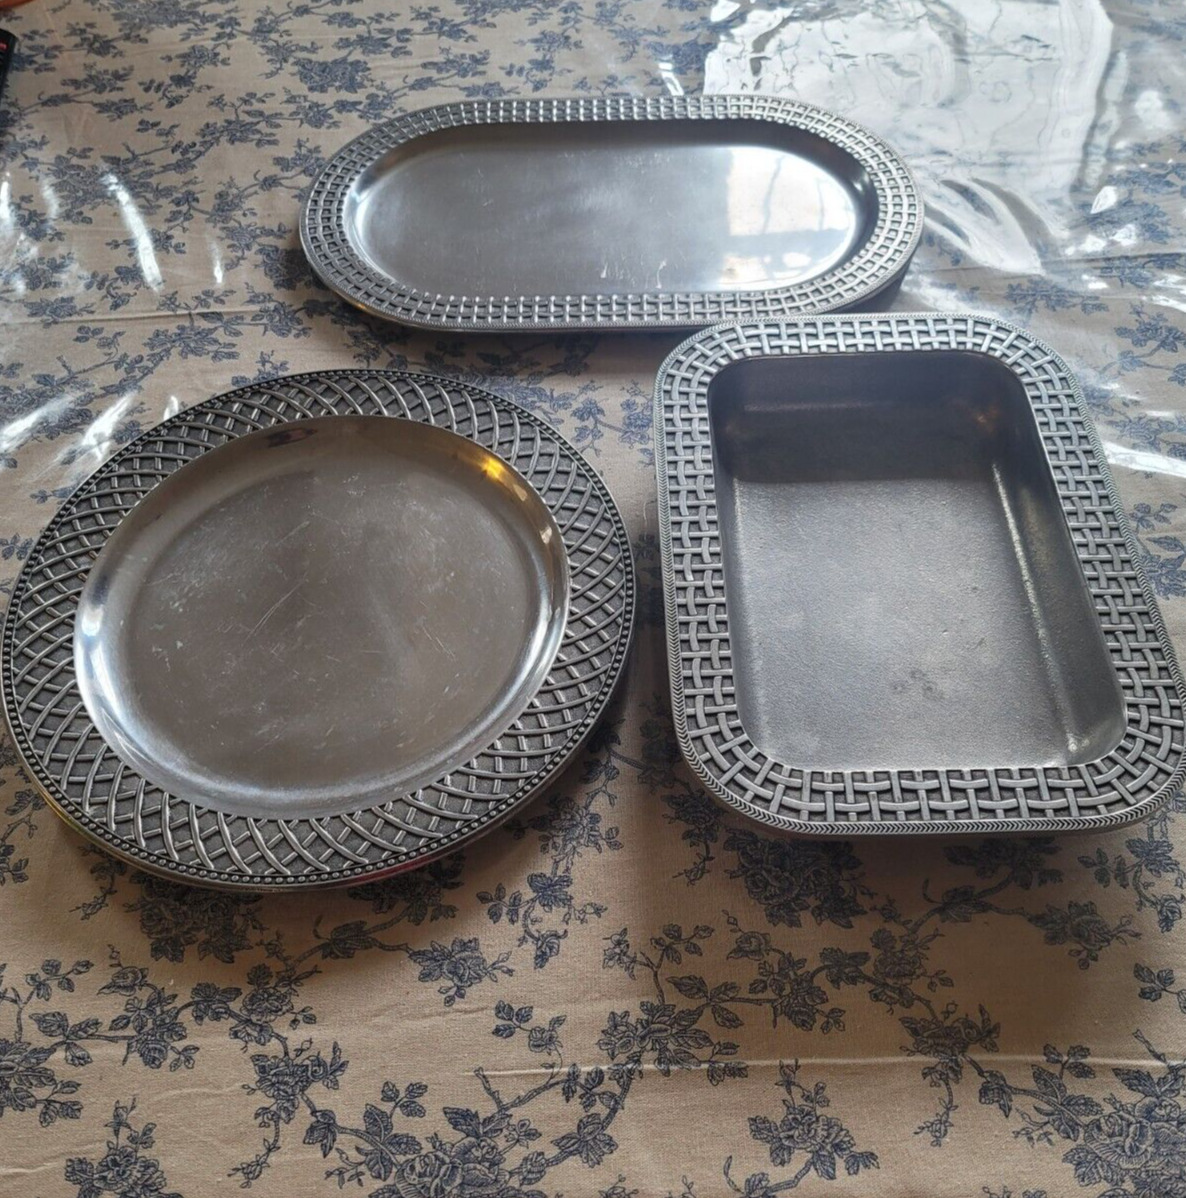 3 Pack Wilton Armetale Basketweave Serving Dish Platter set oval, basket, round